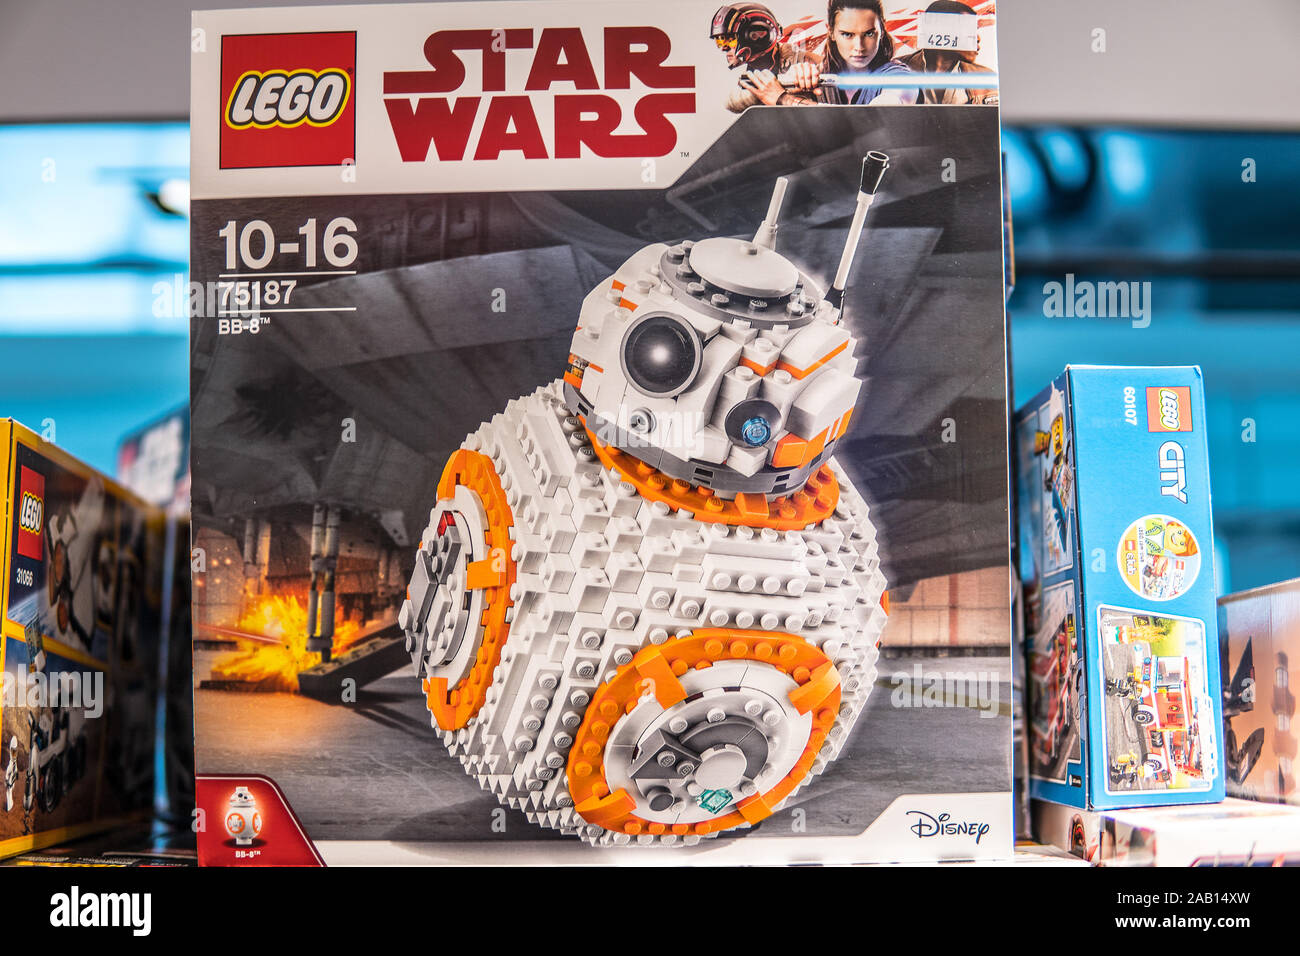 Lego Star Wars BB-8, le dernier Jedi, BB8, Disney, pour les enfants âgés de 10 à 16, 75187, fort sur la boutique pour la vente d'affichage Banque D'Images